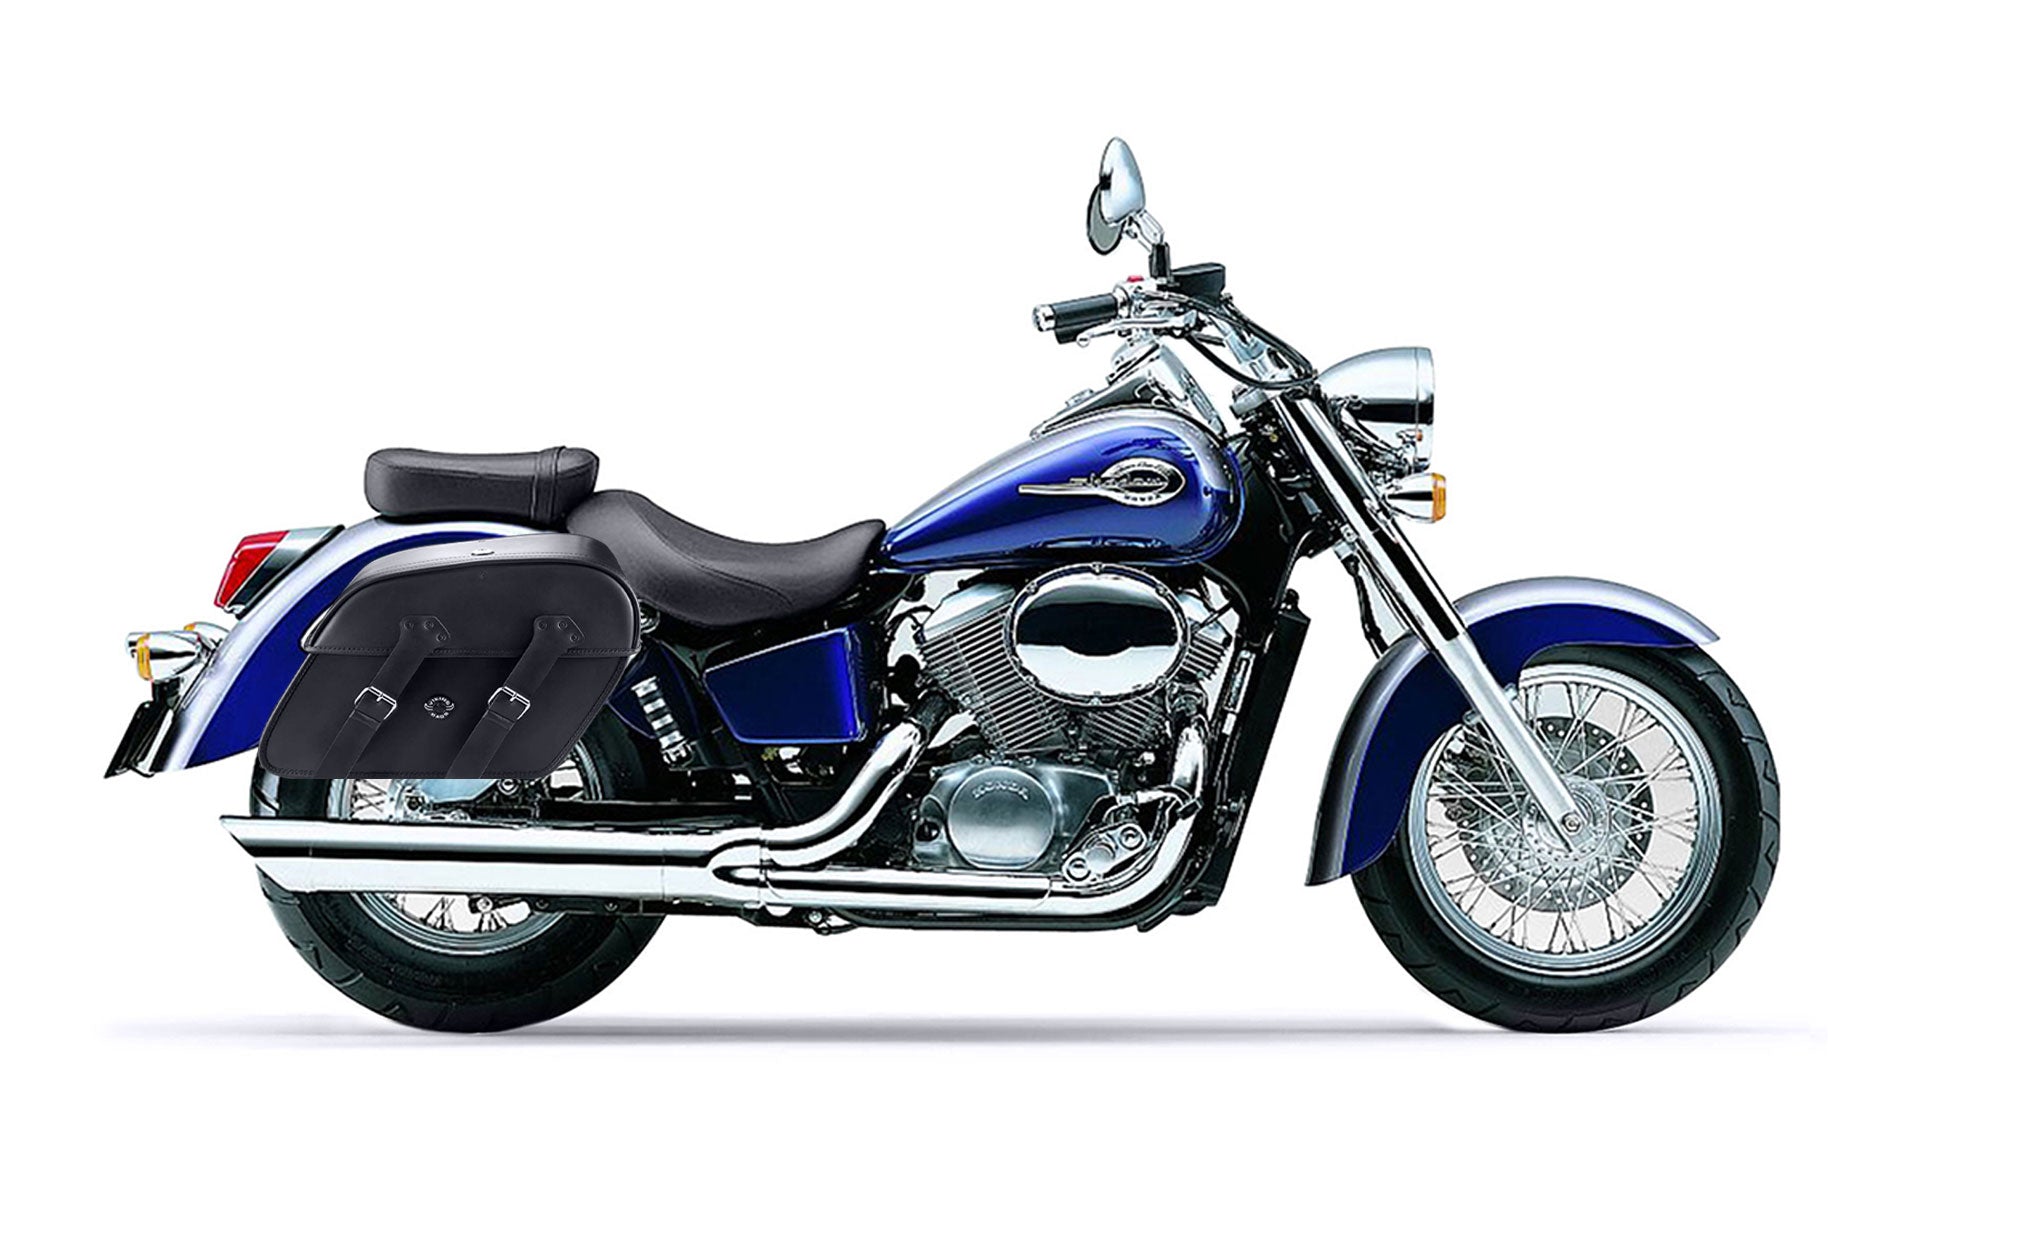 Viking Raven Extra Large Honda Shadow 750 Ace Shock Cut Out Leather Motorcycle Saddlebags on Bike Photo @expand